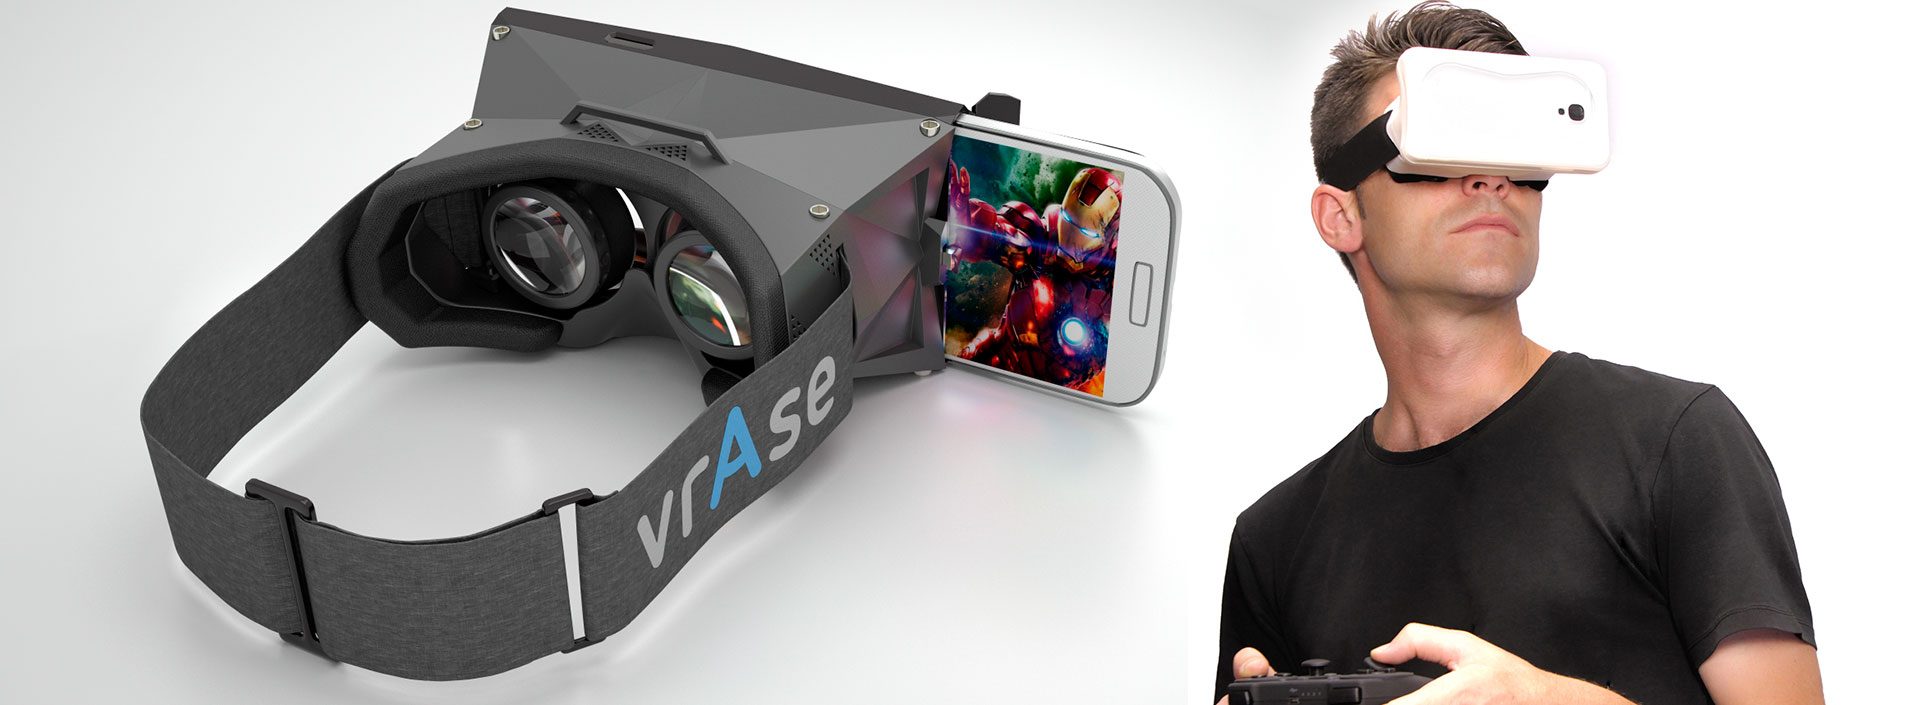 vrAse: превращаем смартфон в очки для виртуальной реальности